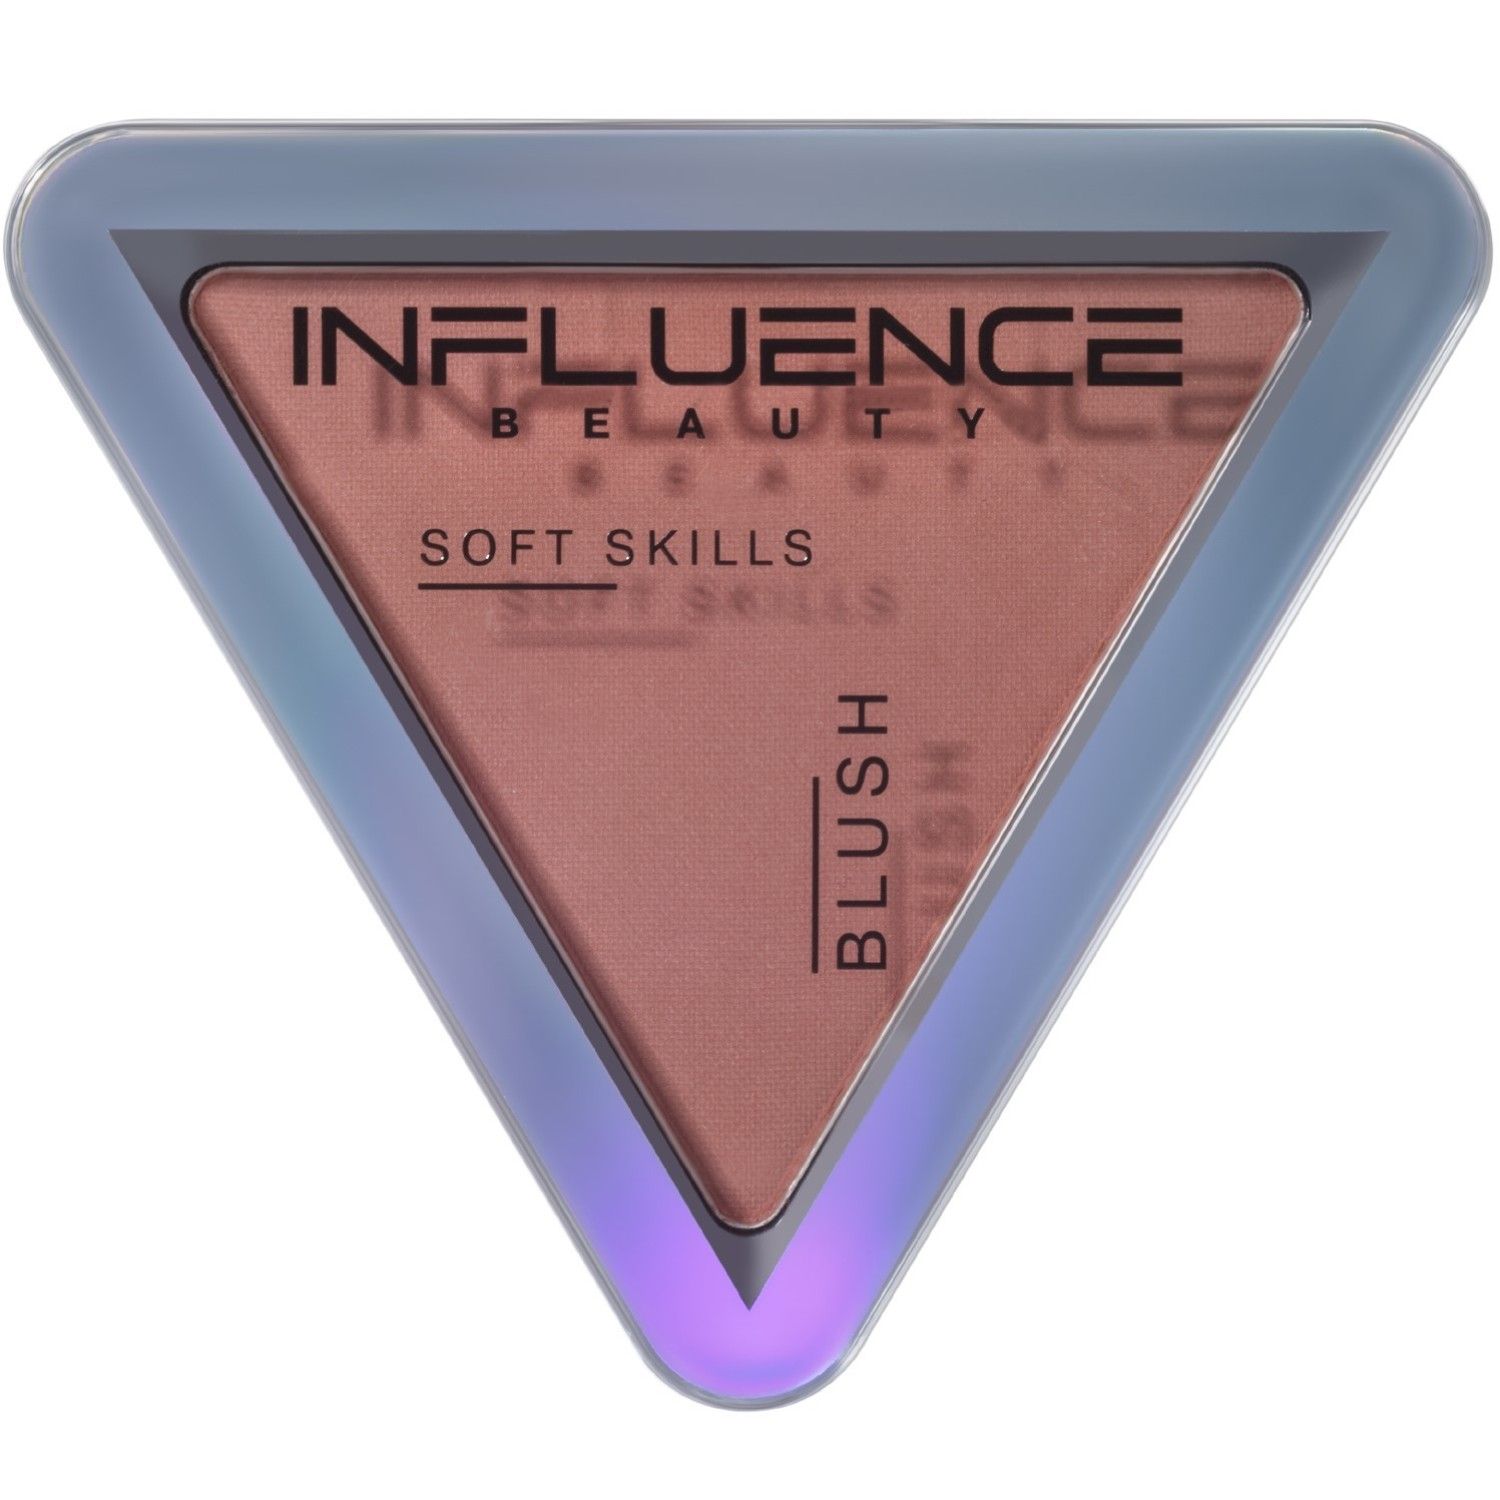 Румяна Influence Beauty Soft Skills компактные, тон 04 натуральный холодный розовый, 3 г концепция формирования soft skills выпускников вузов